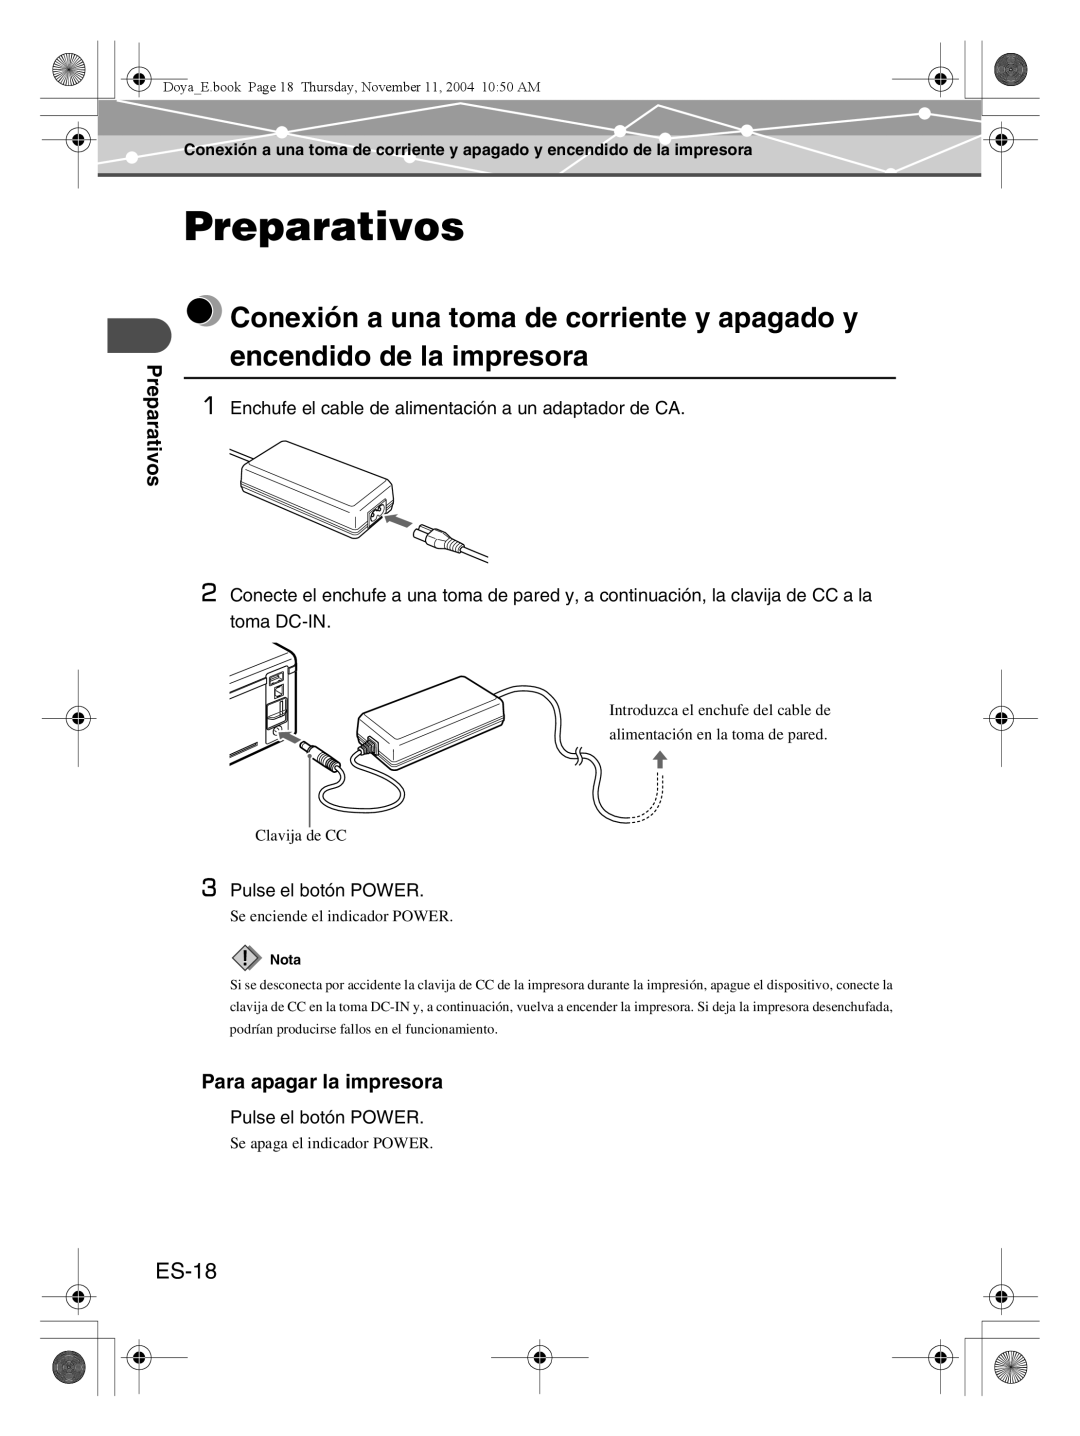 Olympus P-S100 user manual Preparativos, ES-18, Para apagar la impresora, Nota 